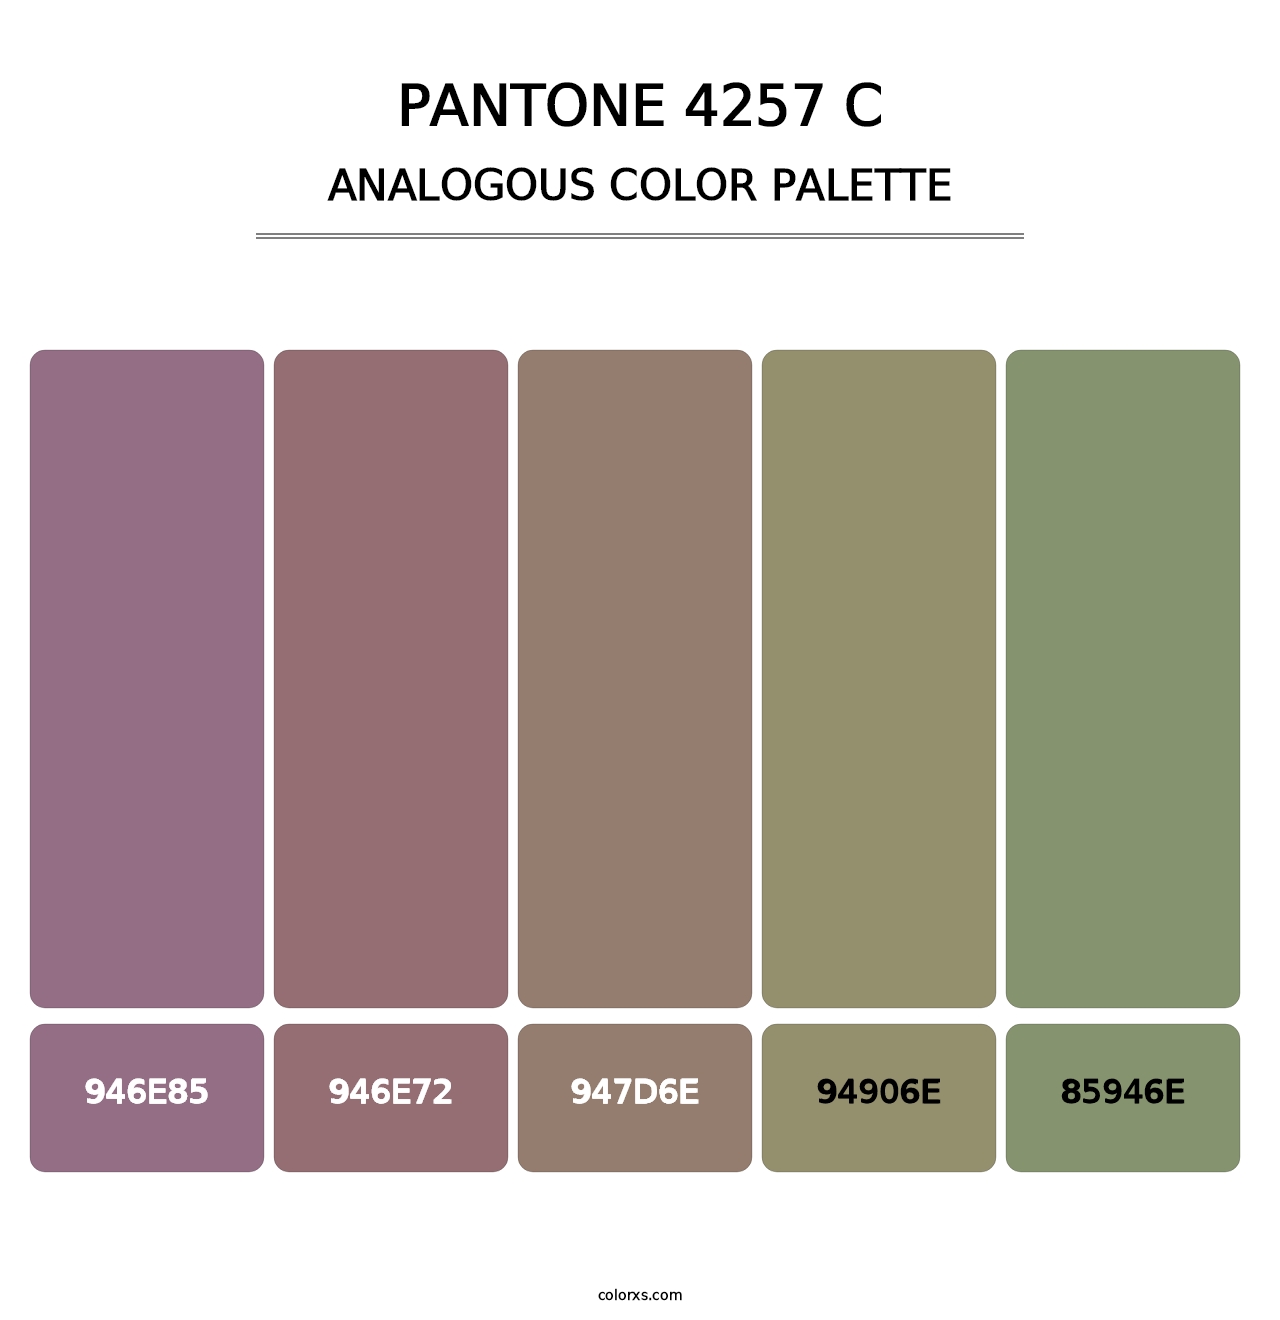 PANTONE 4257 C - Analogous Color Palette